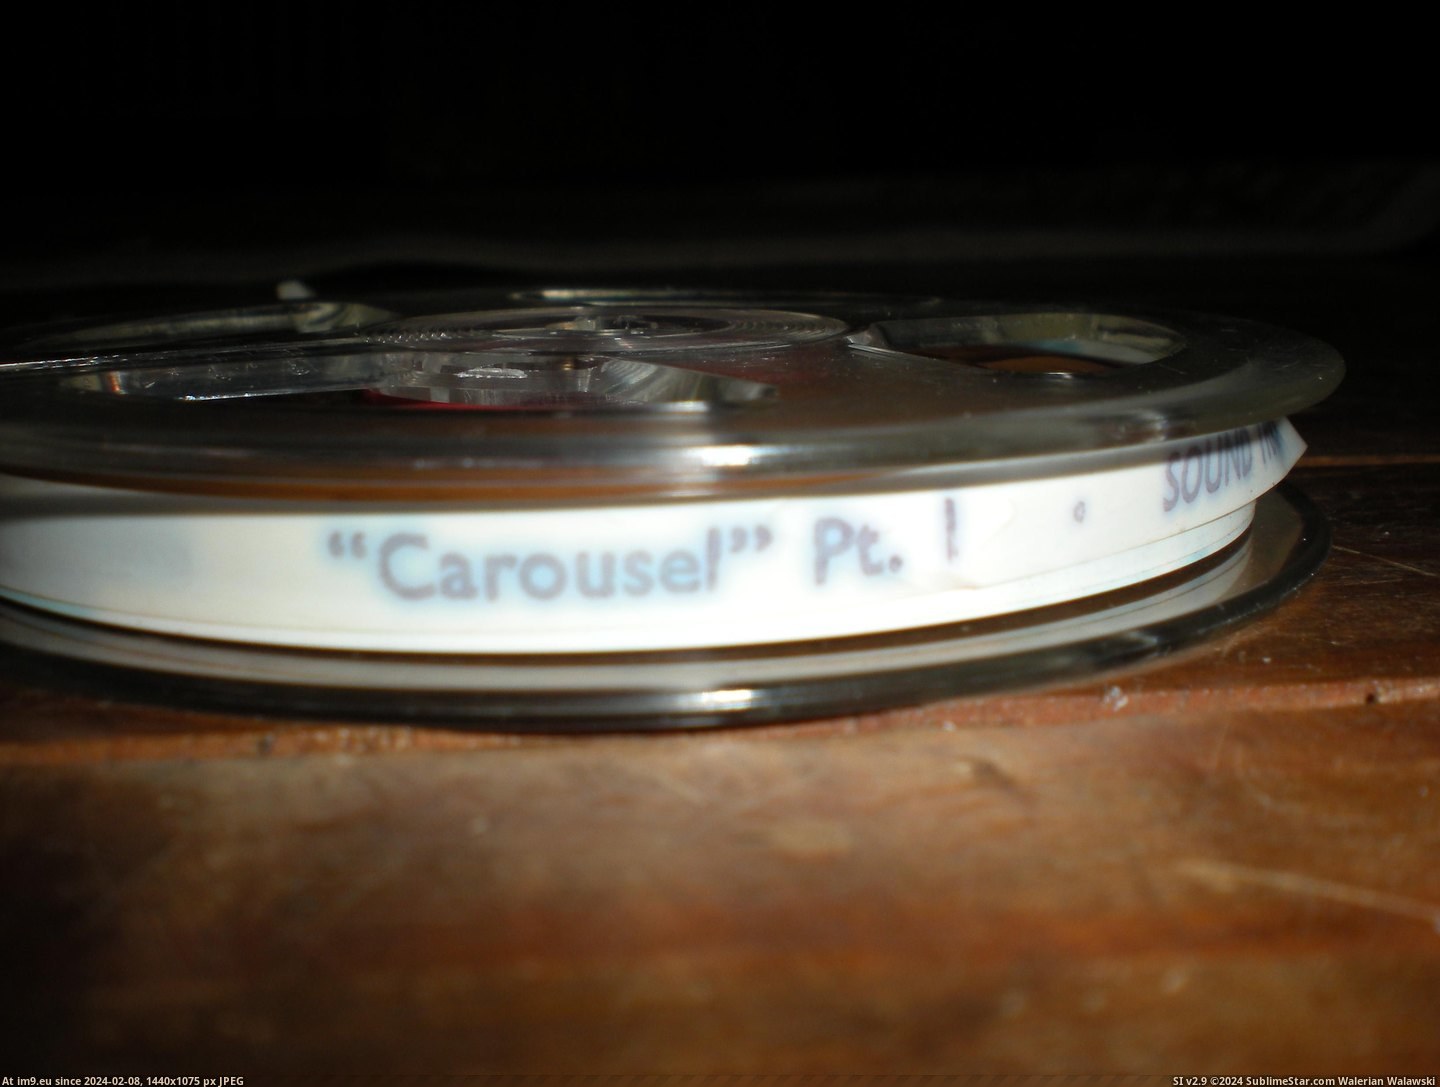  #Carousel  Carousel 4 Pic. (Bild von album new 1))